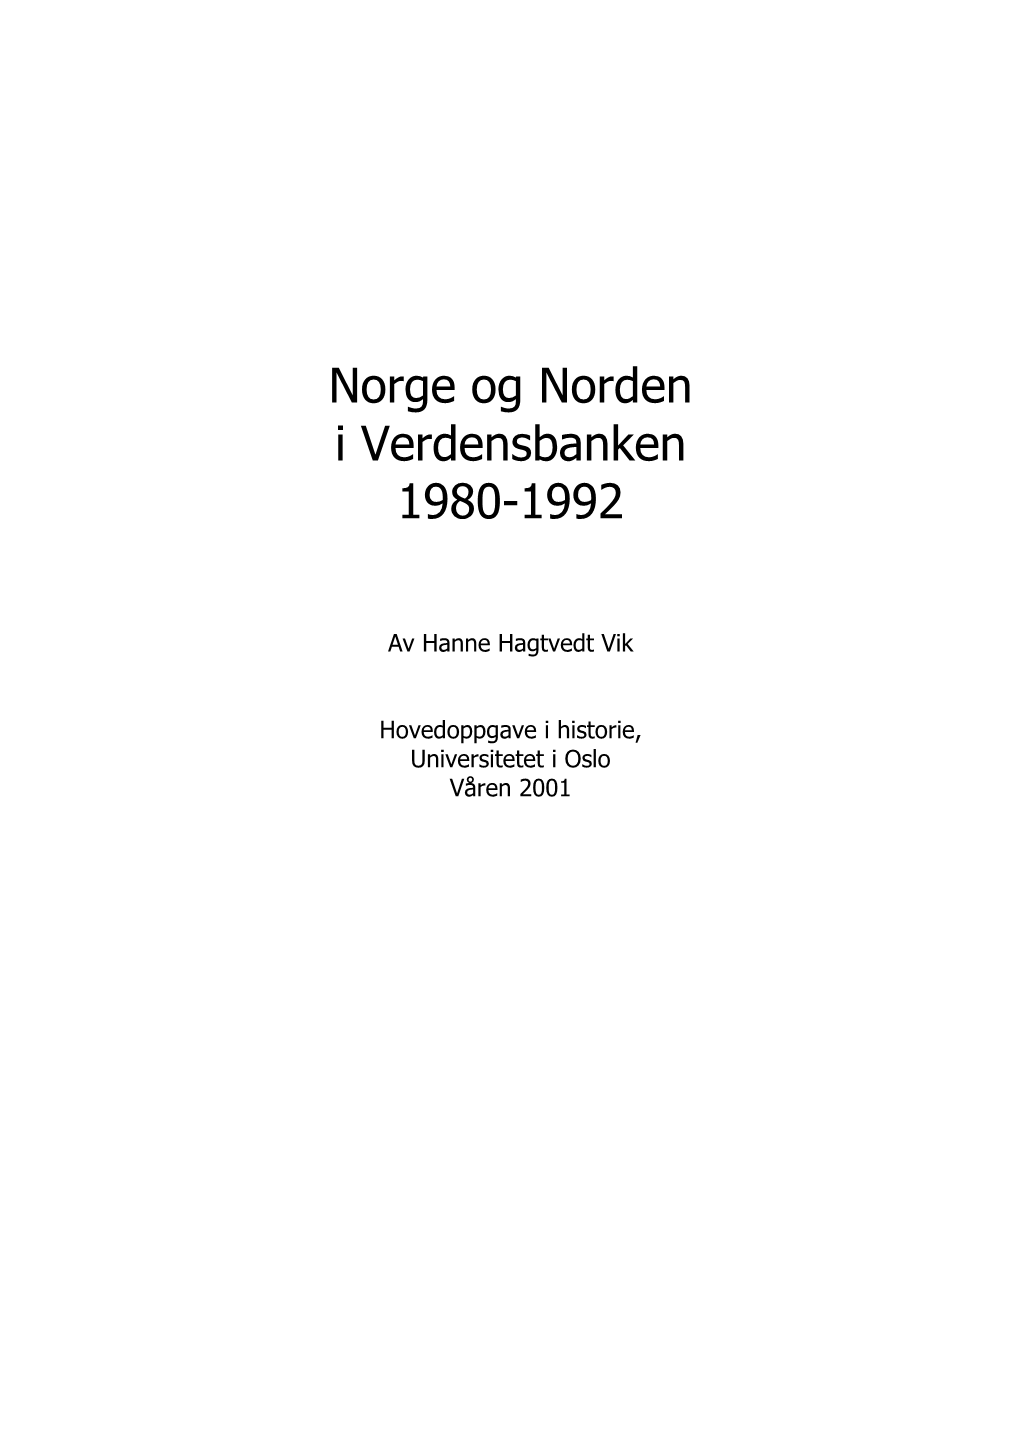 Norge Og Norden I Verdensbanken 1980-1992